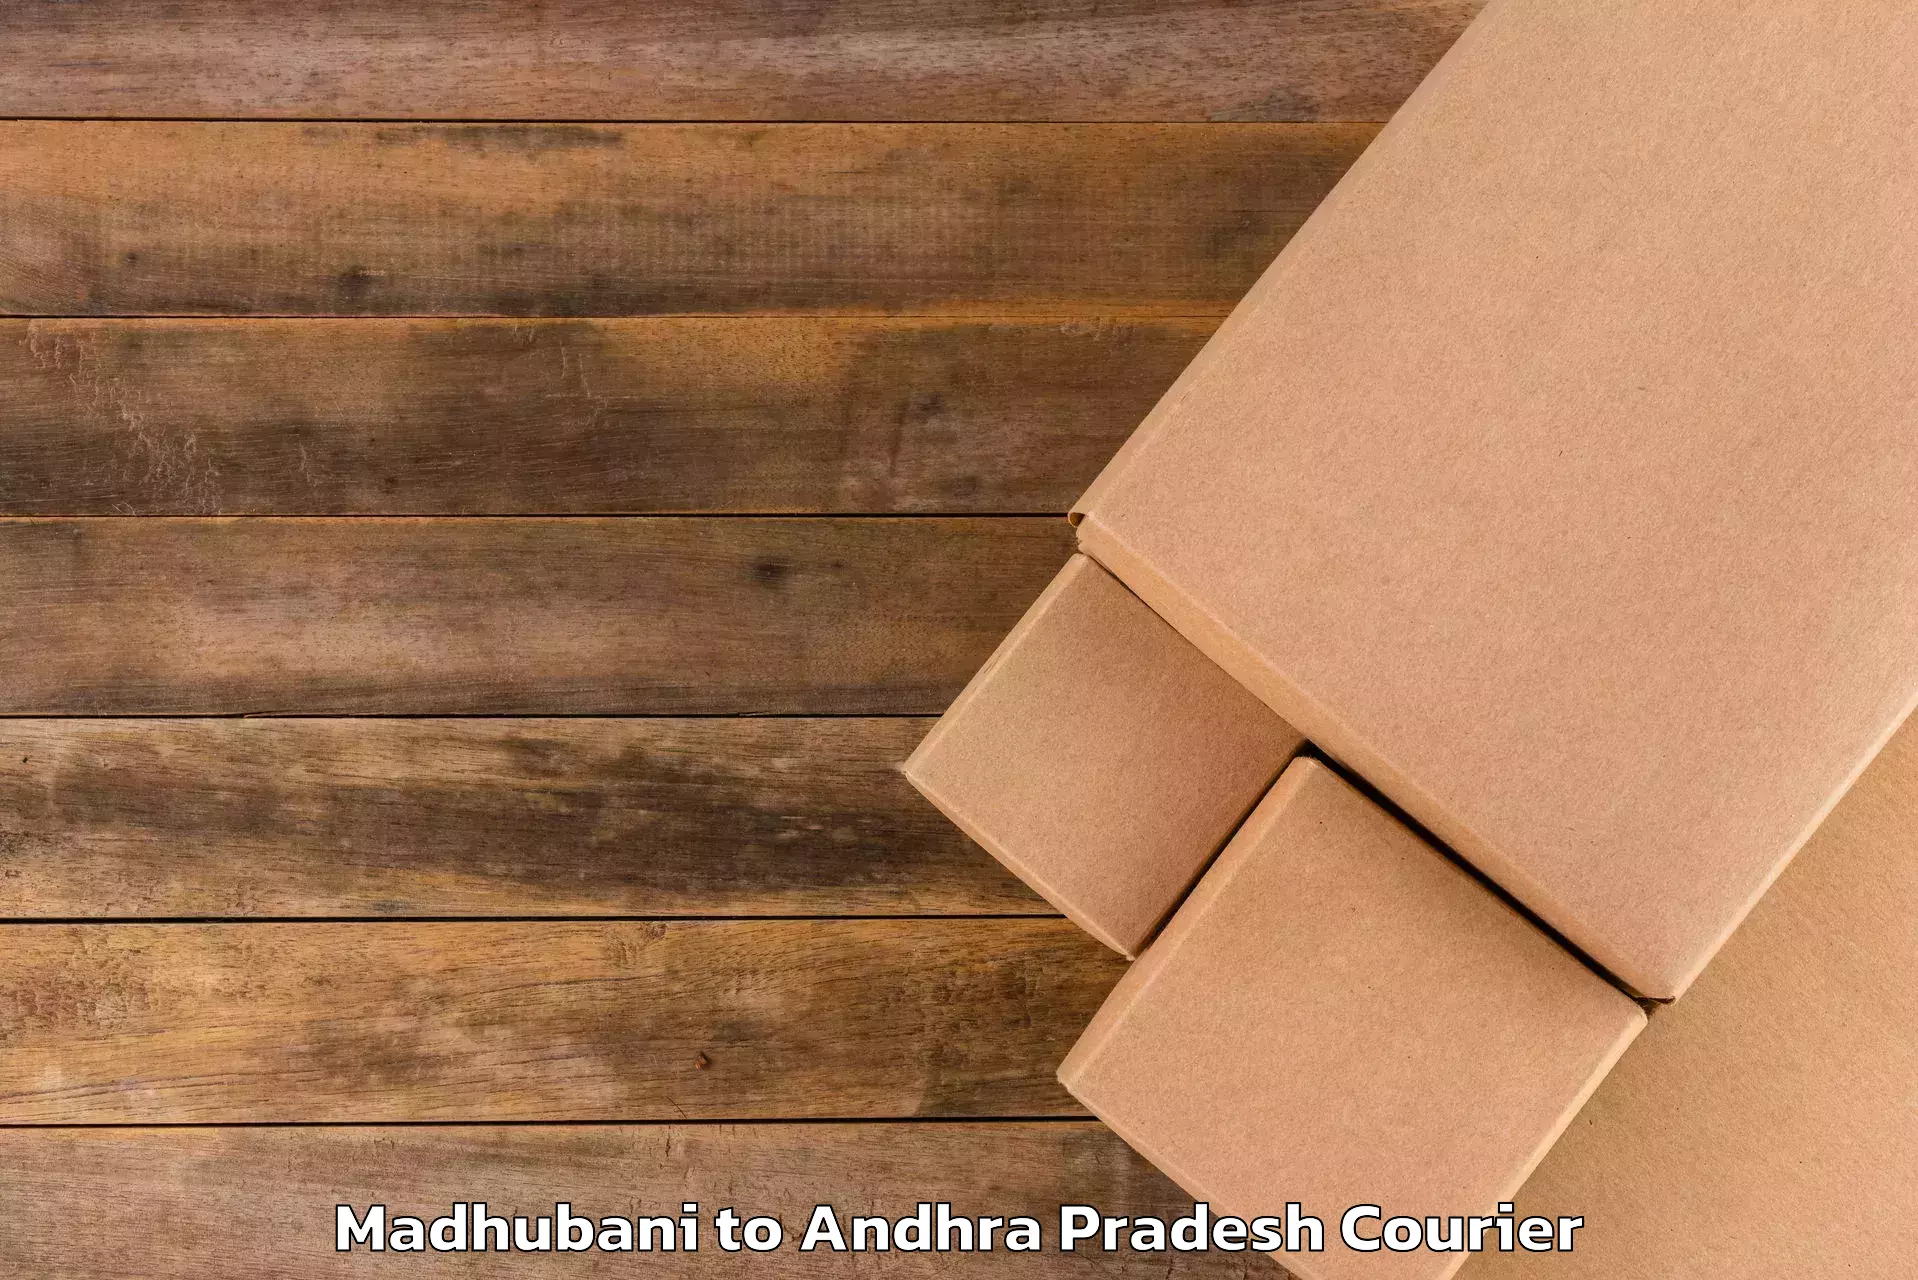 Luggage shipment tracking Madhubani to Adoni